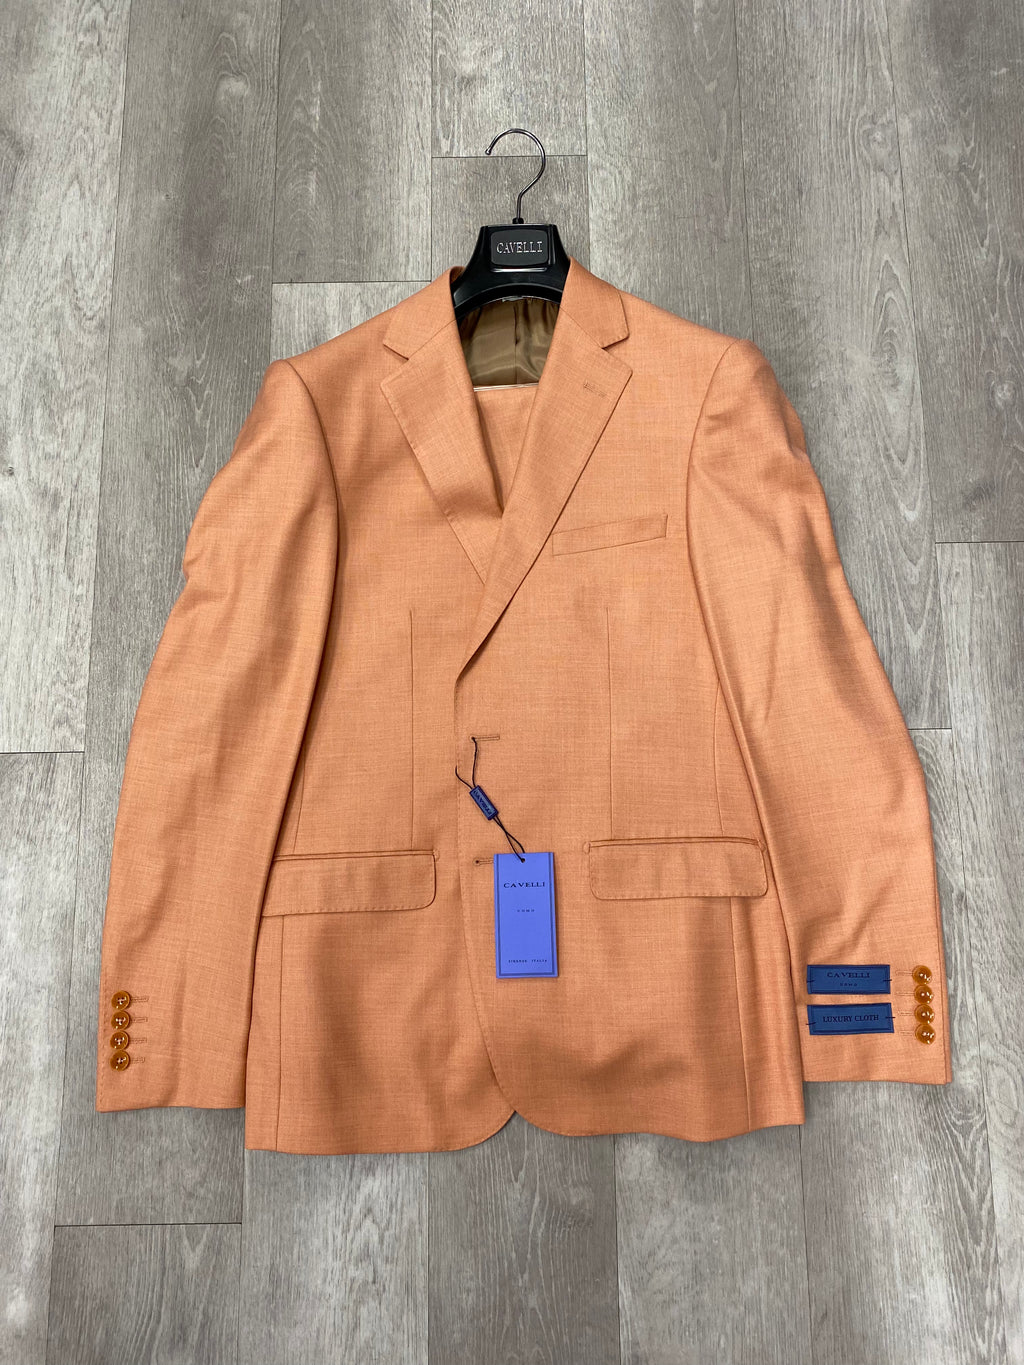 Cavelli Uomo Porto Slim Fit Suit 1986/10 Orange